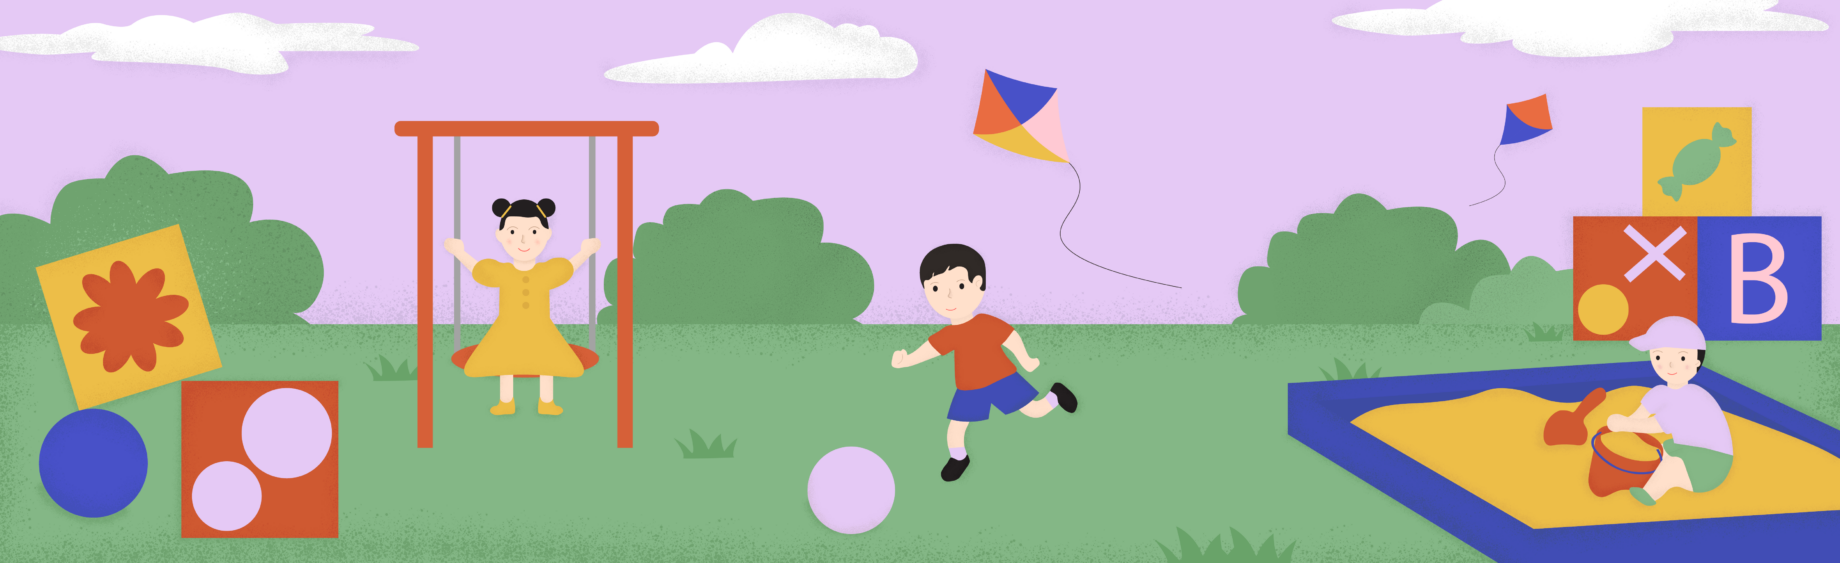 10 подвижных игр из нашего детства: развлекаем и оздоравливаем ребёнка